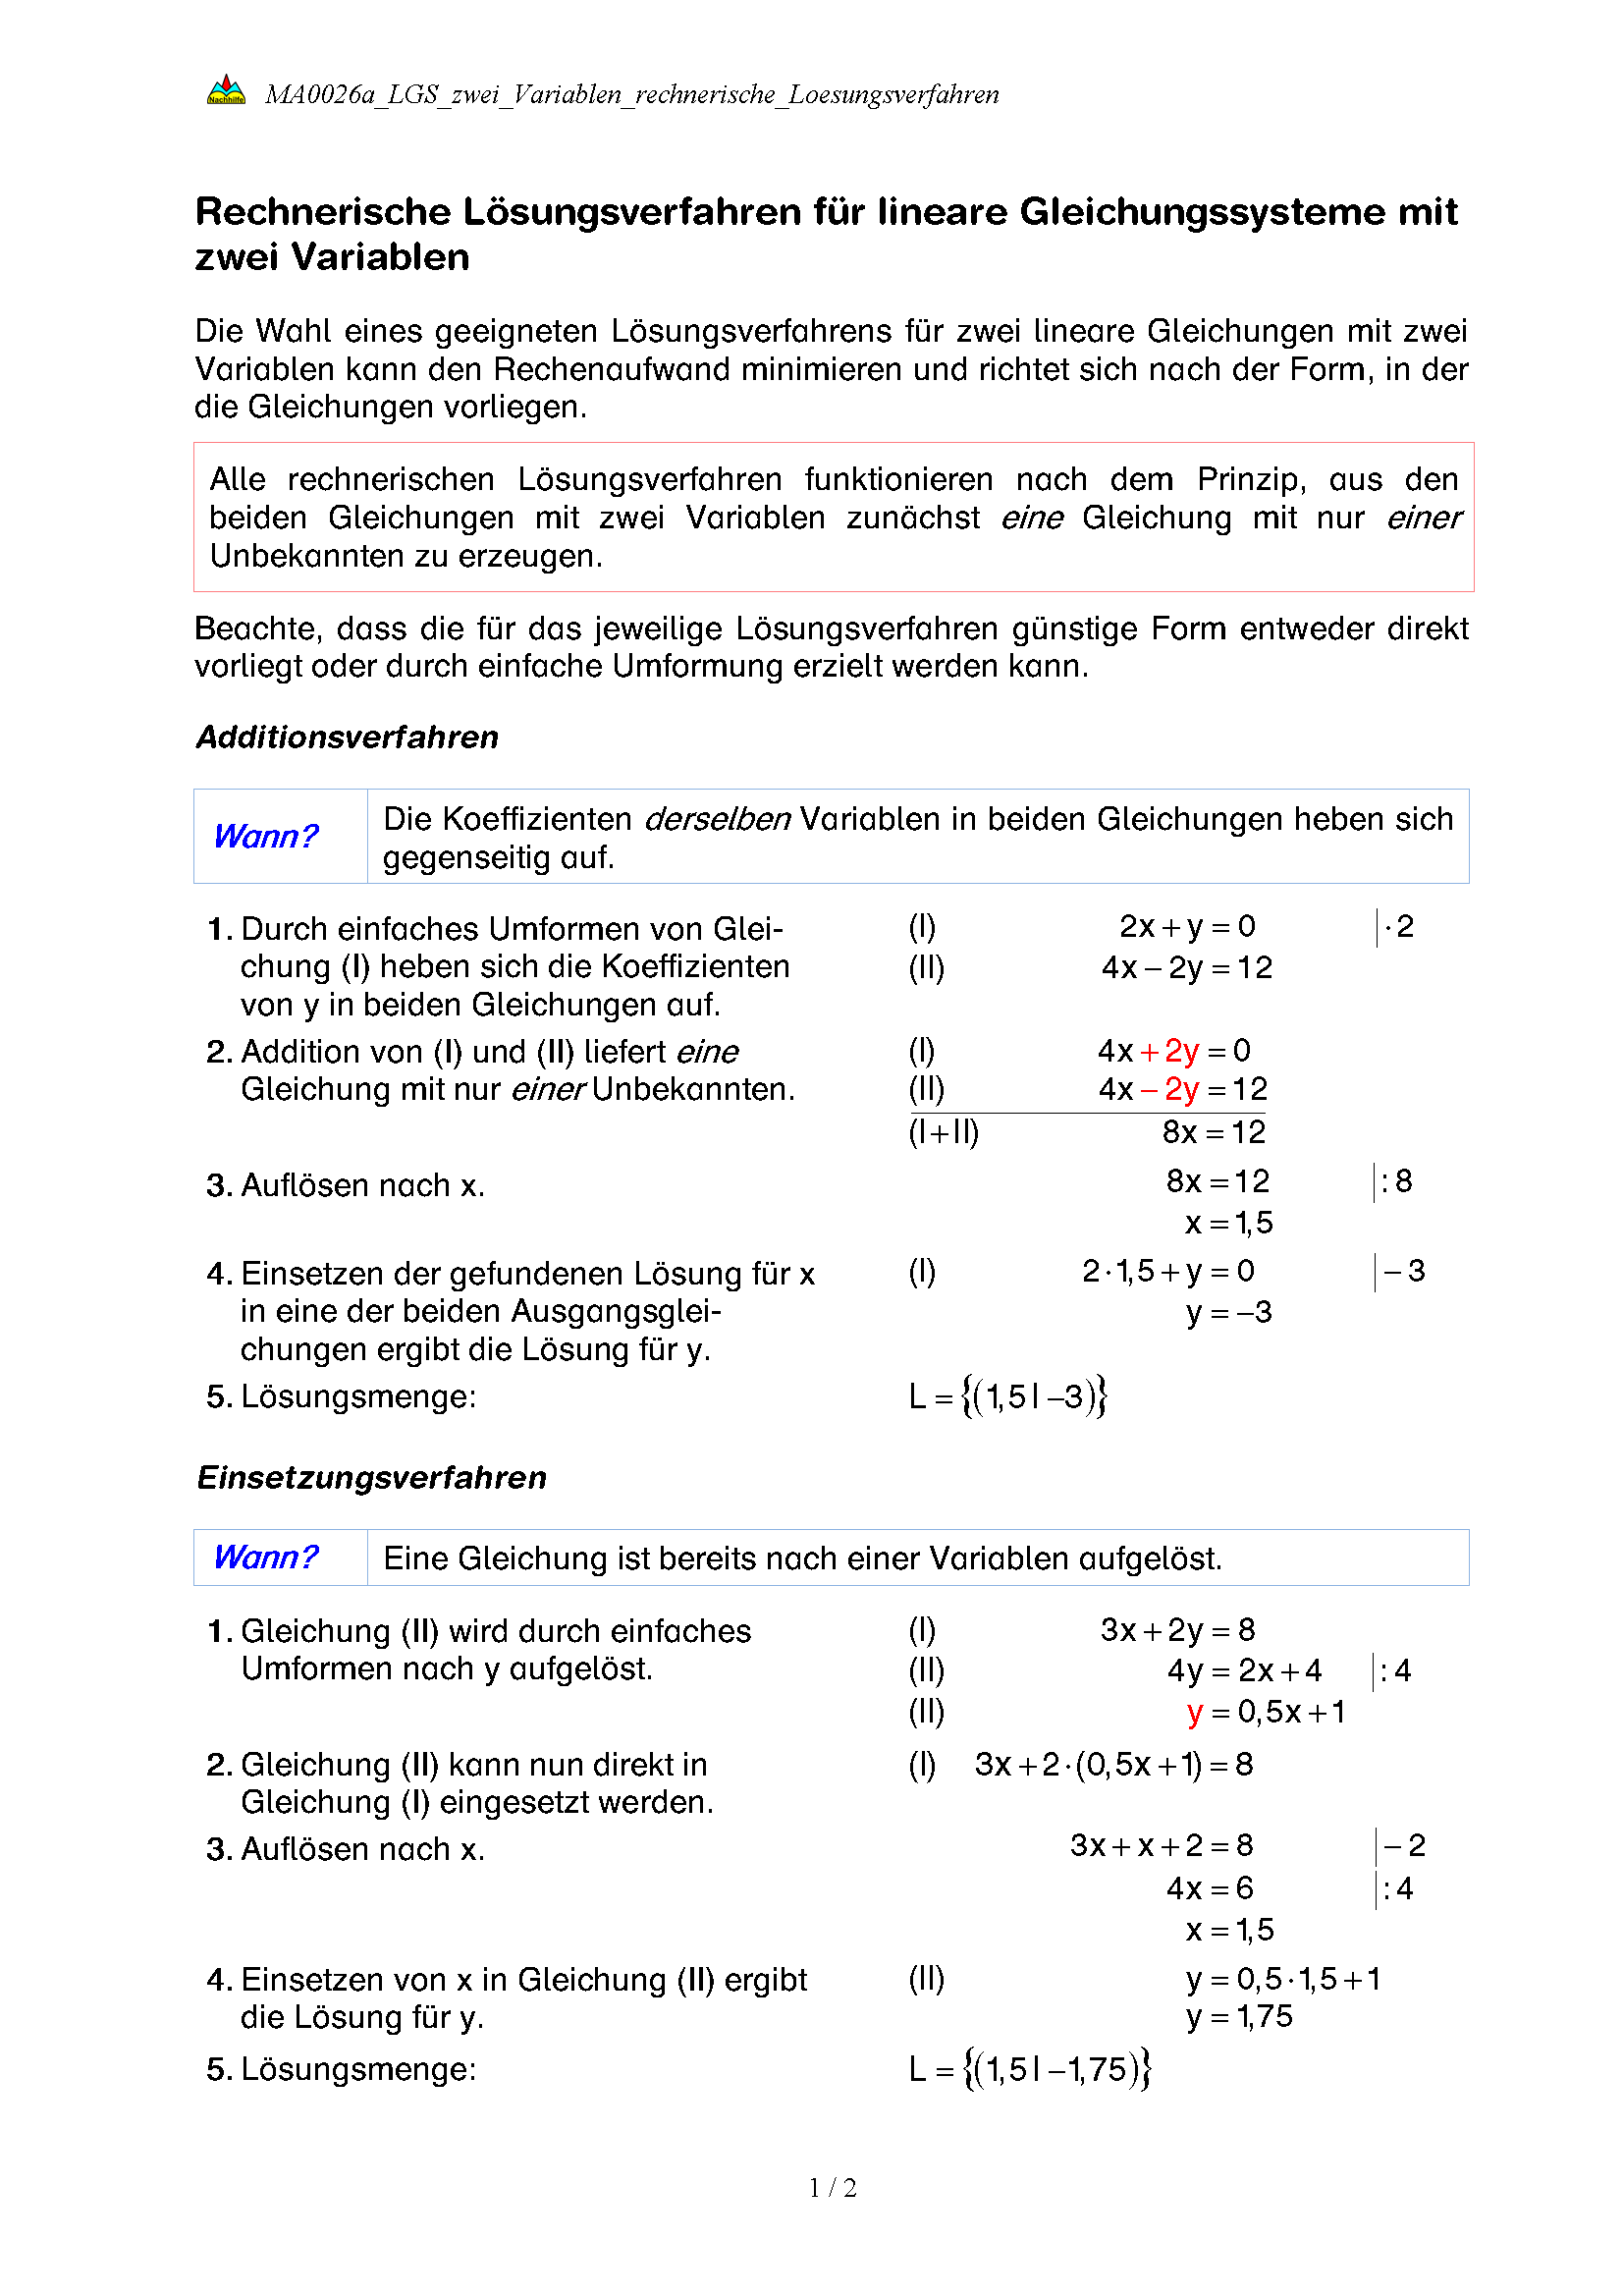 Rechnerische Lösungsverfahren für lineare Gleichungssysteme mit zwei Variablen